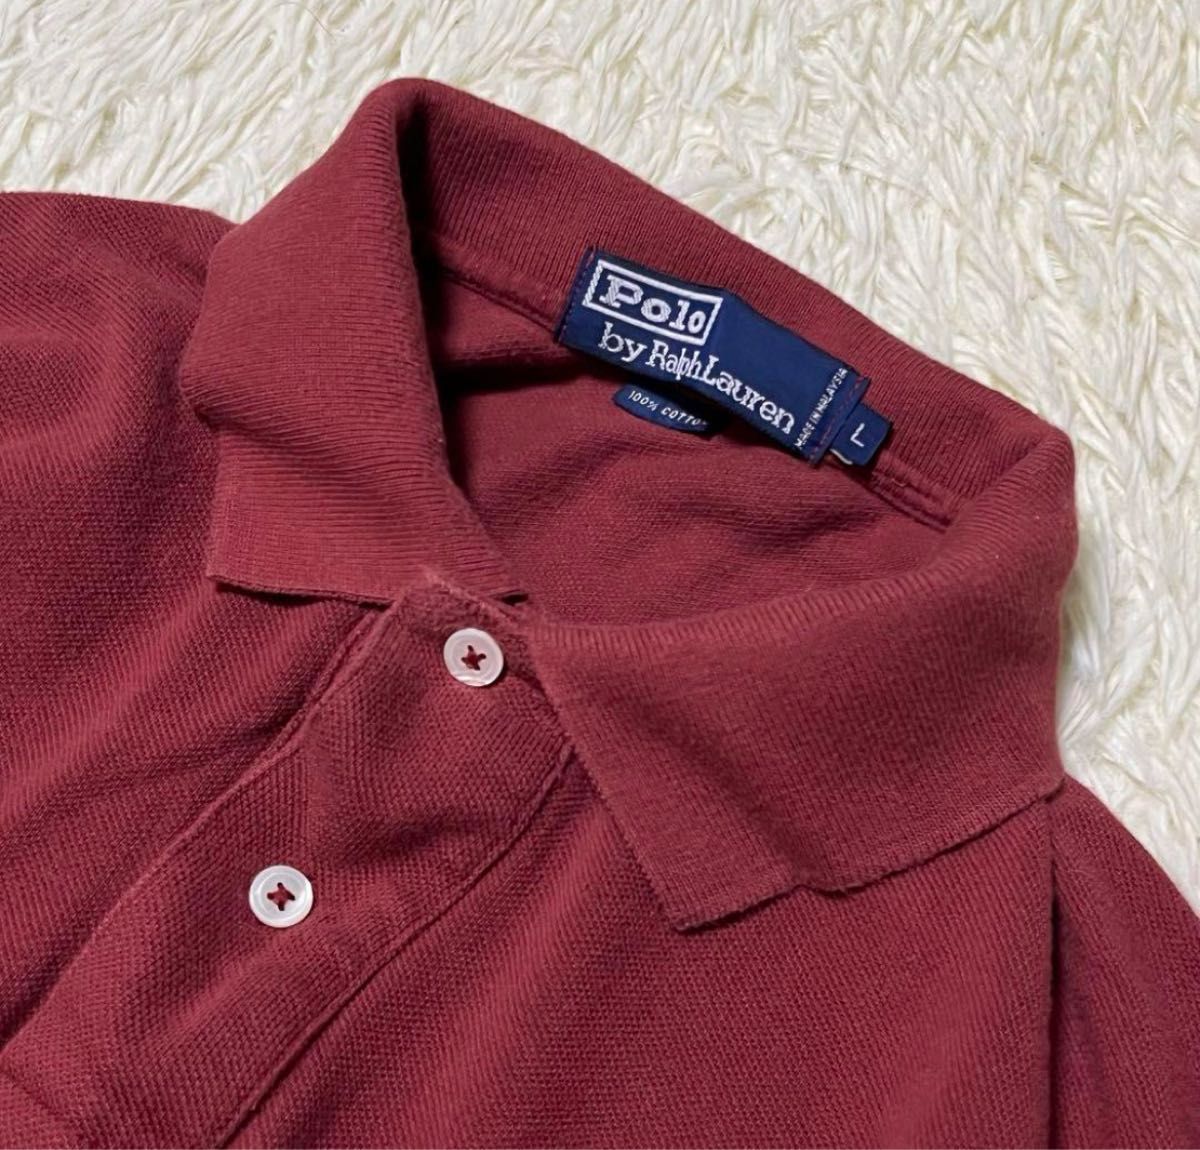 Polo Ralph Lauren ポロラルフローレン ポロシャツ 半袖 ポニー 刺繍 綿 コットン 茶系 L 大きいサイズ